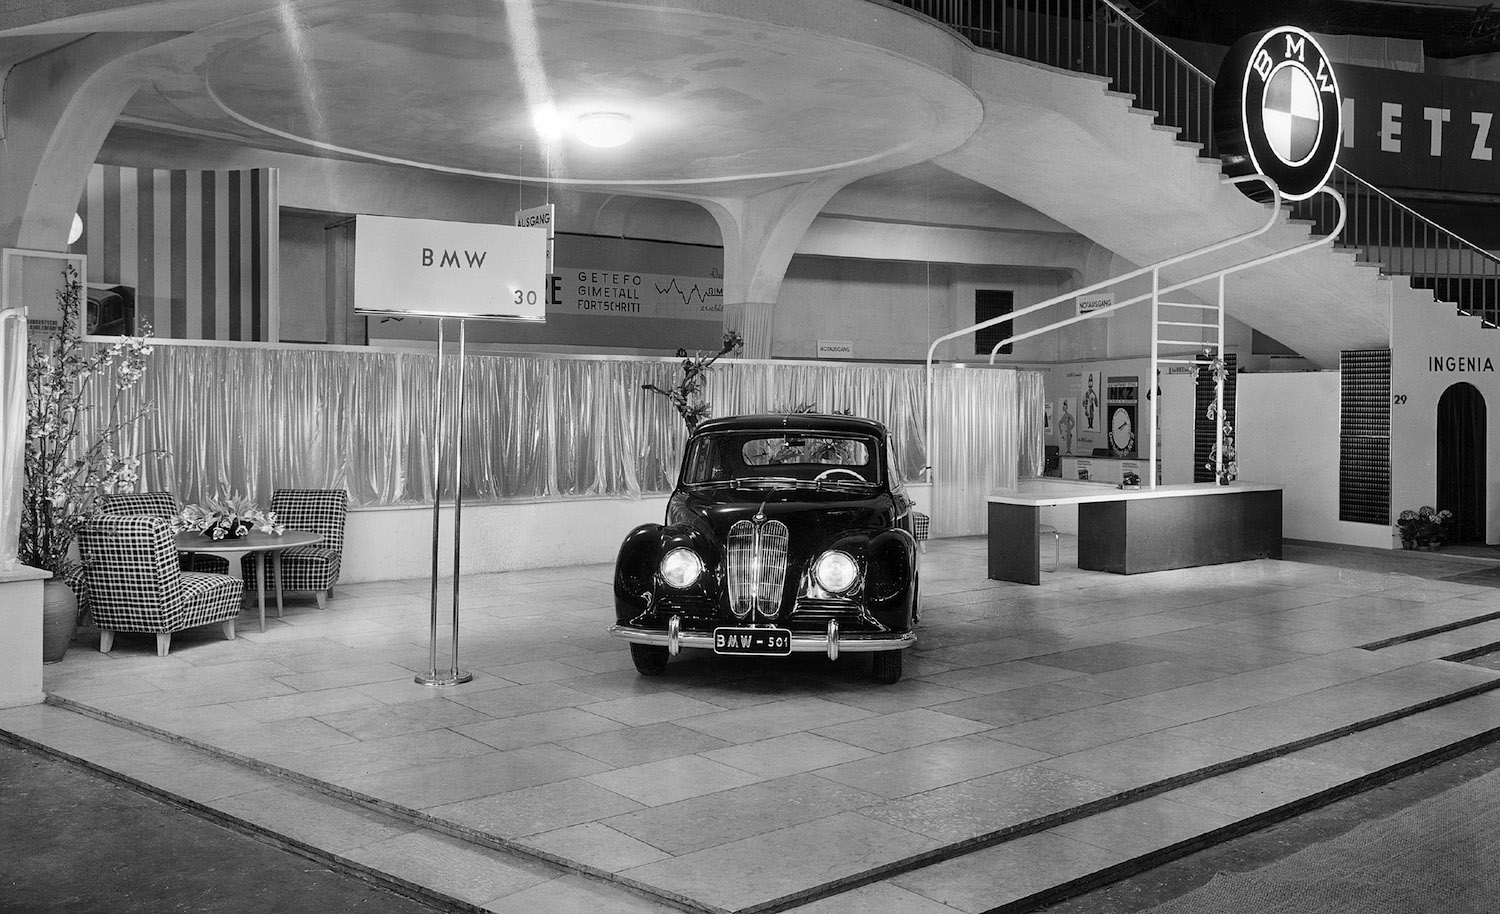 Im November 1952 werden die ersten BMW 501 mit einem 2.0-Liter Reihensechszylinder-Motor und 65 PS an die Händler ausgeliefert. Aufgrund seiner großzügigen Rundungen wird er bald liebevoll „Barockengel“ genannt.